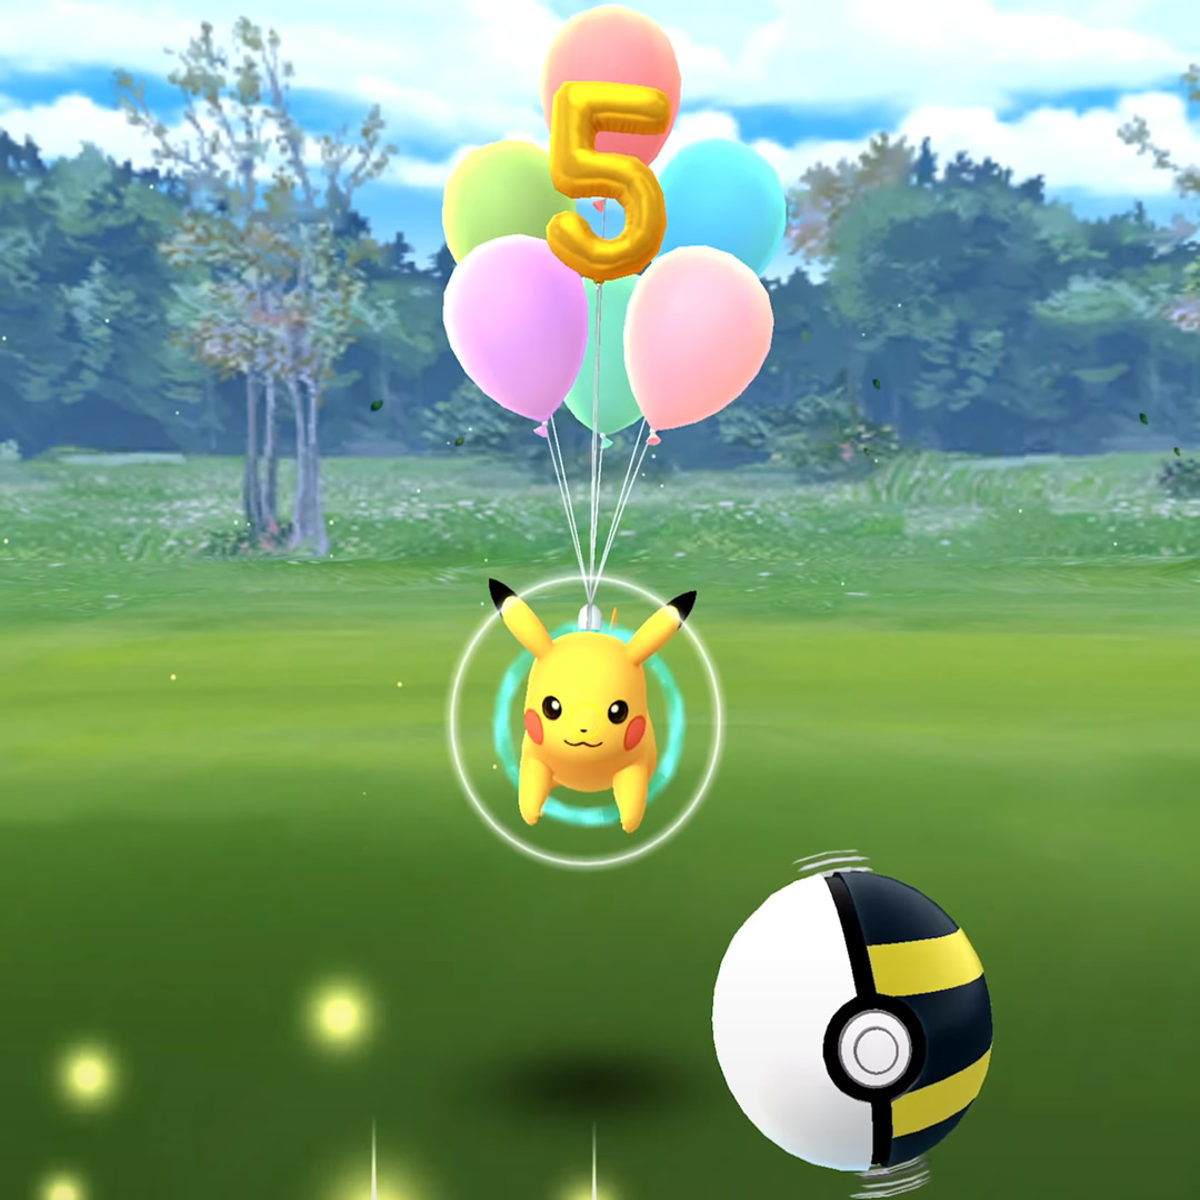 Pokémon GO: Pikachu con globos, todo sobre el evento y dónde encontrarlo -  Millenium